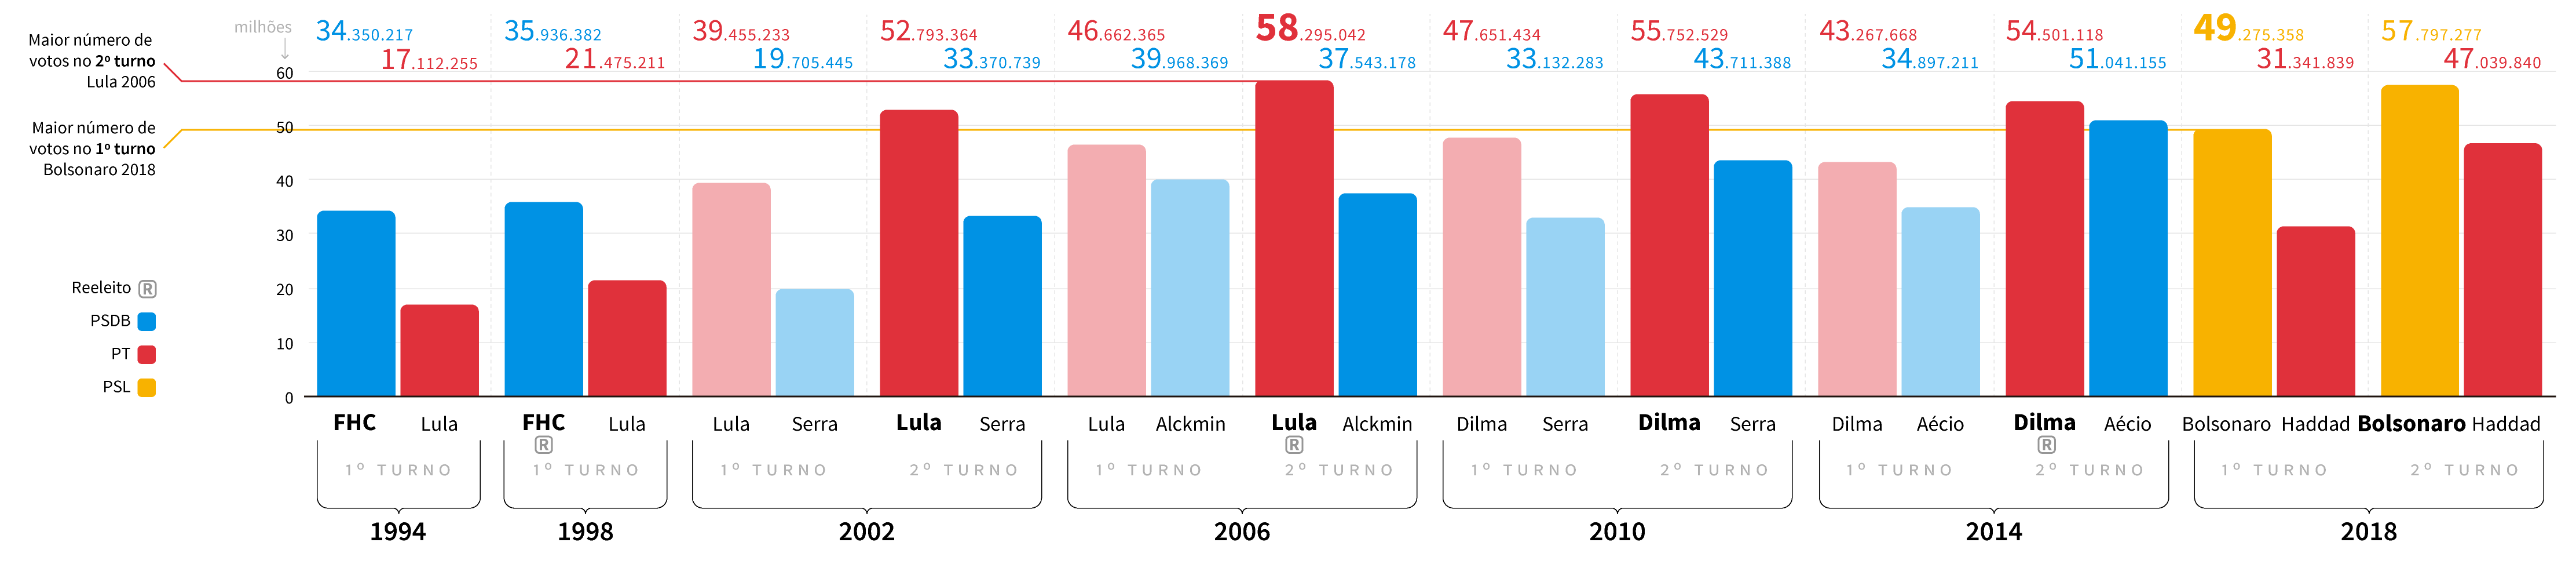 Infográfico: histórico de número de votos válidos nas eleições presidenciais de 1994 a 2018